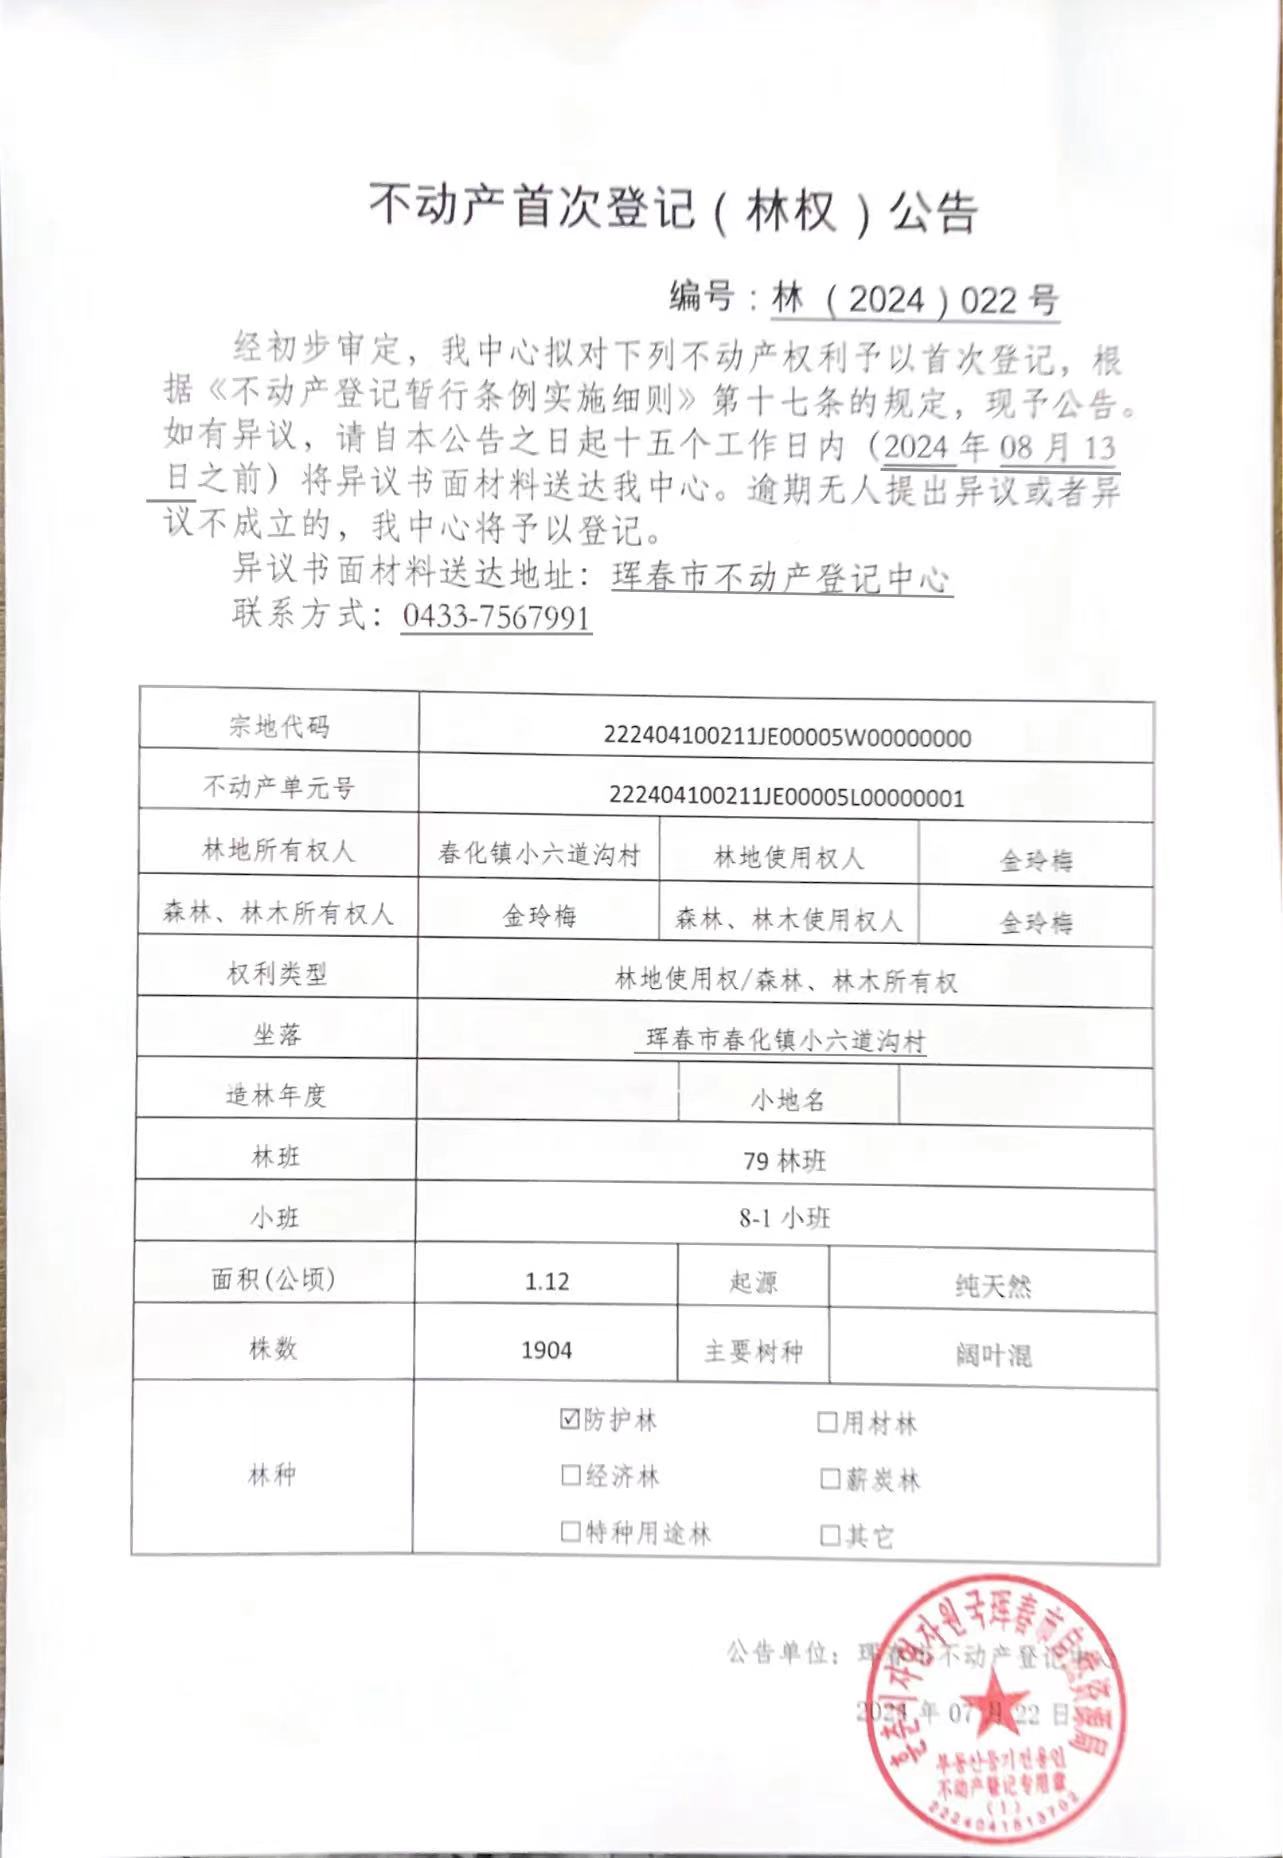 不动产首次登记(林权)公告 编号:林(2024)022号